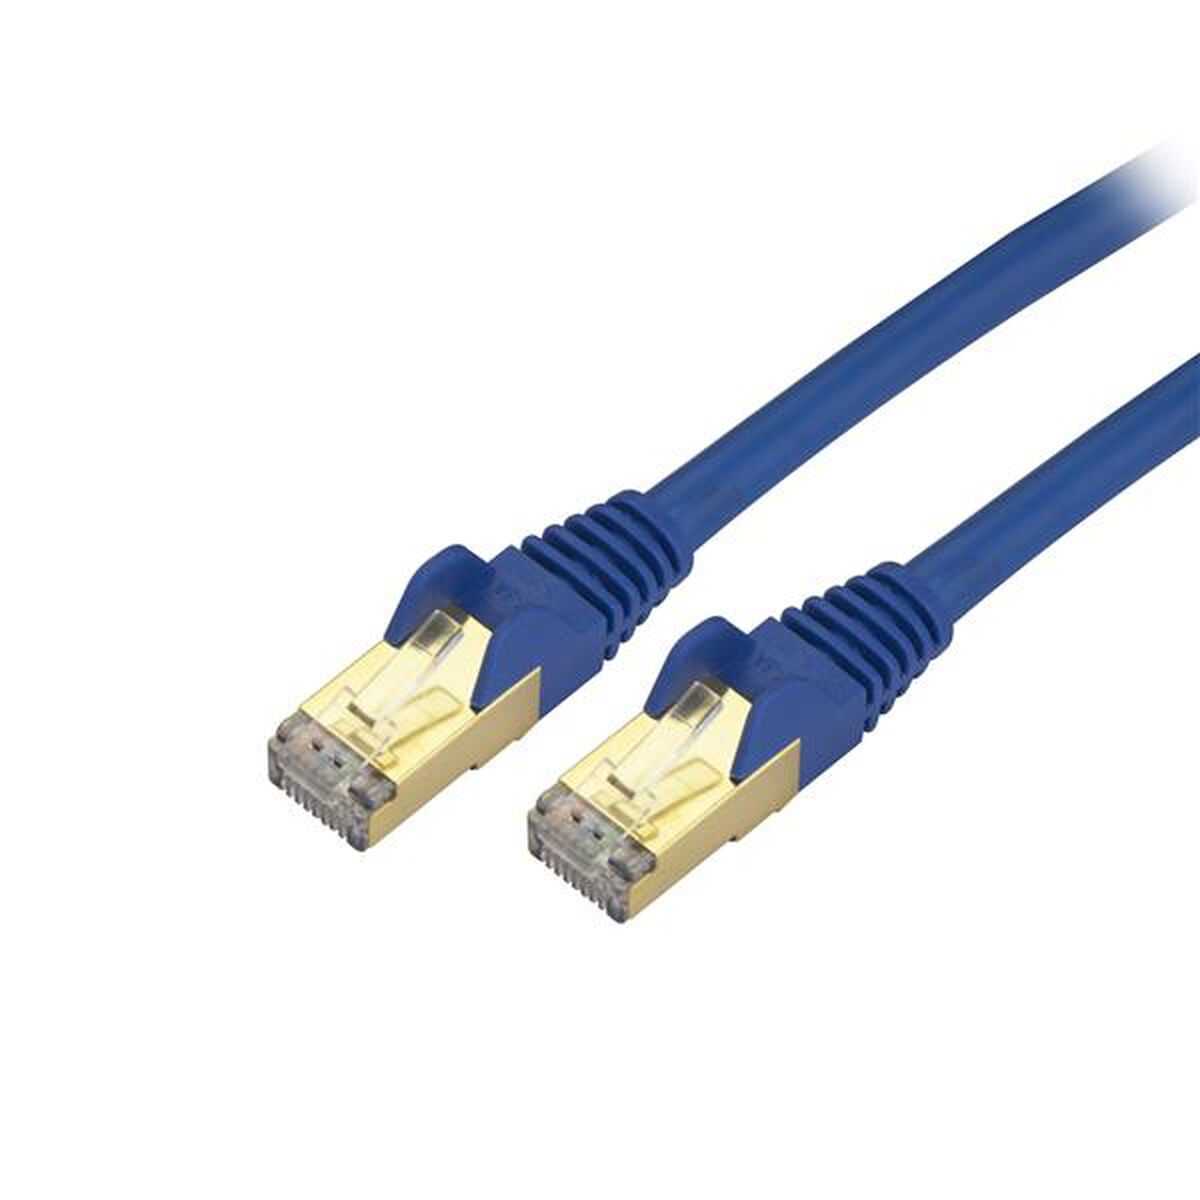 UTP Category 6 Rigid Network Cable Startech C6ASPAT10BL 3 m Black Blue